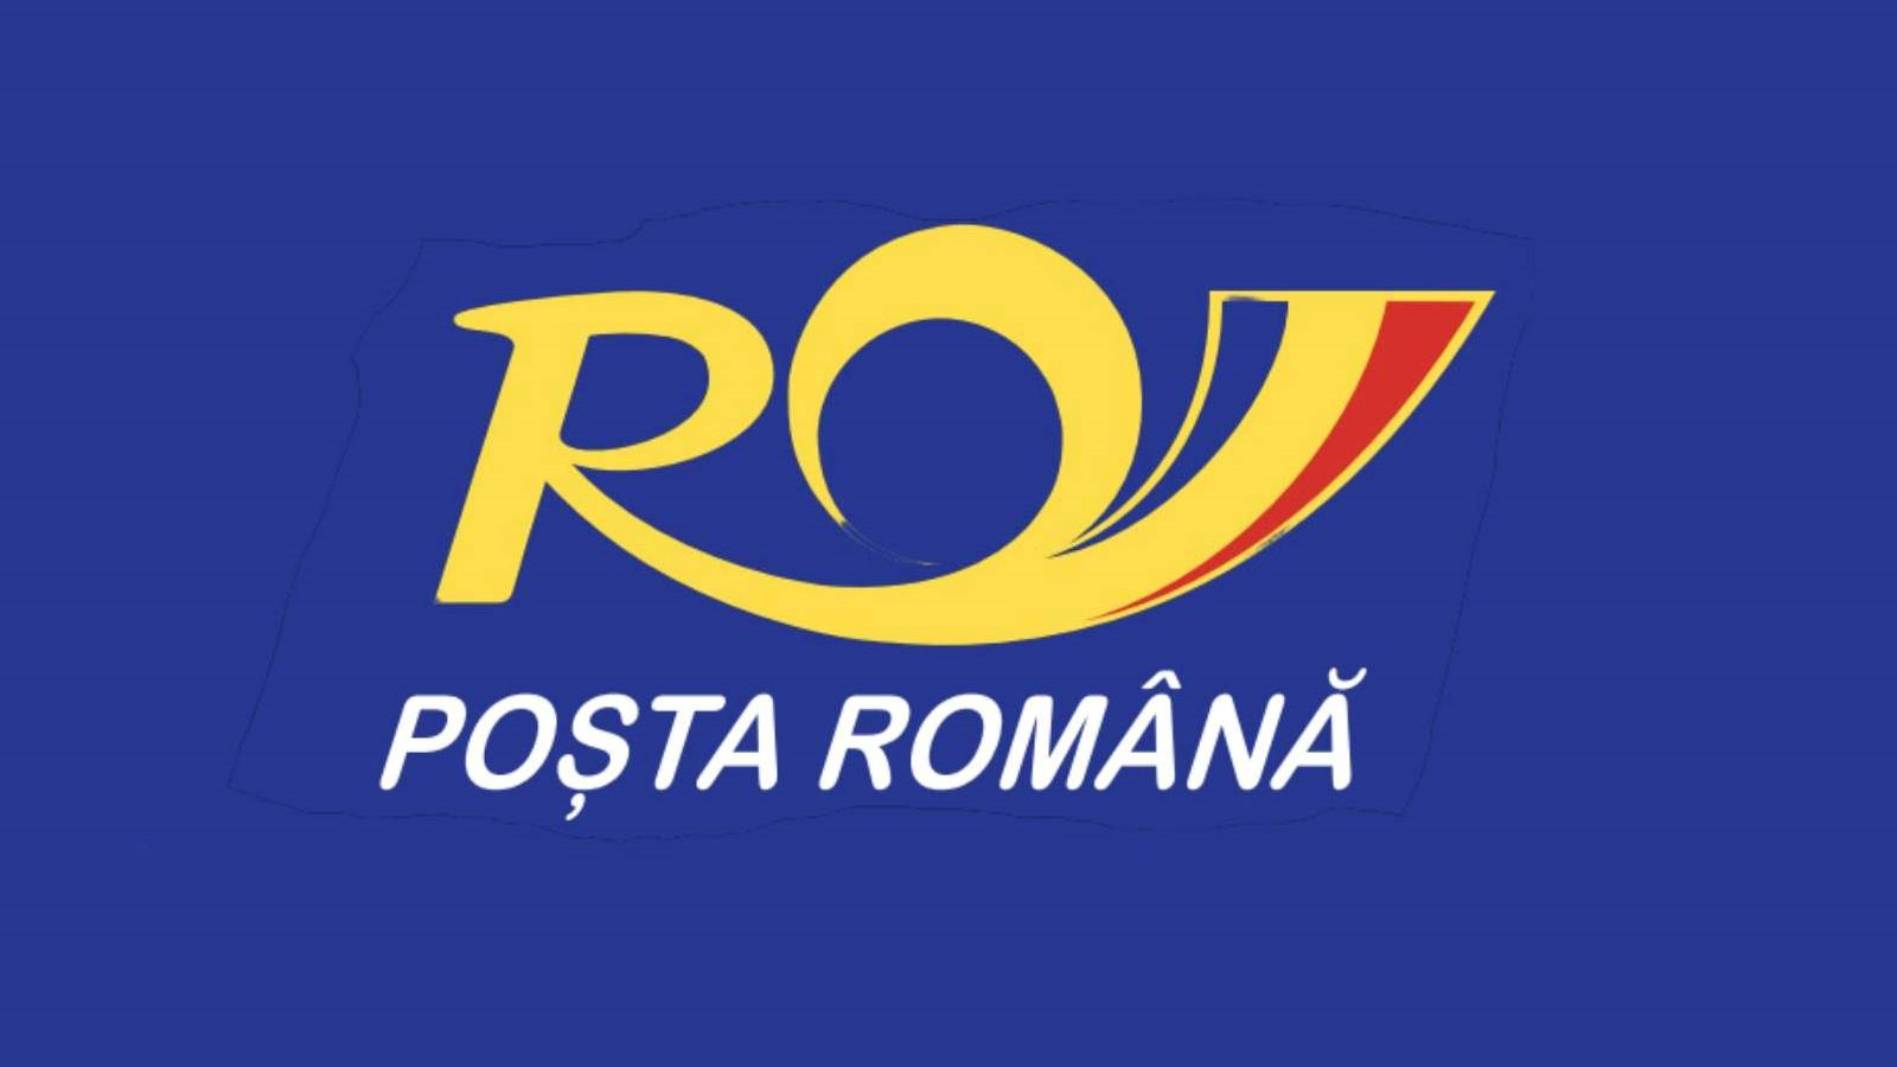 Offizielle LAST-MINUTE-Warnung der rumänischen Post an Millionen von Rumänen